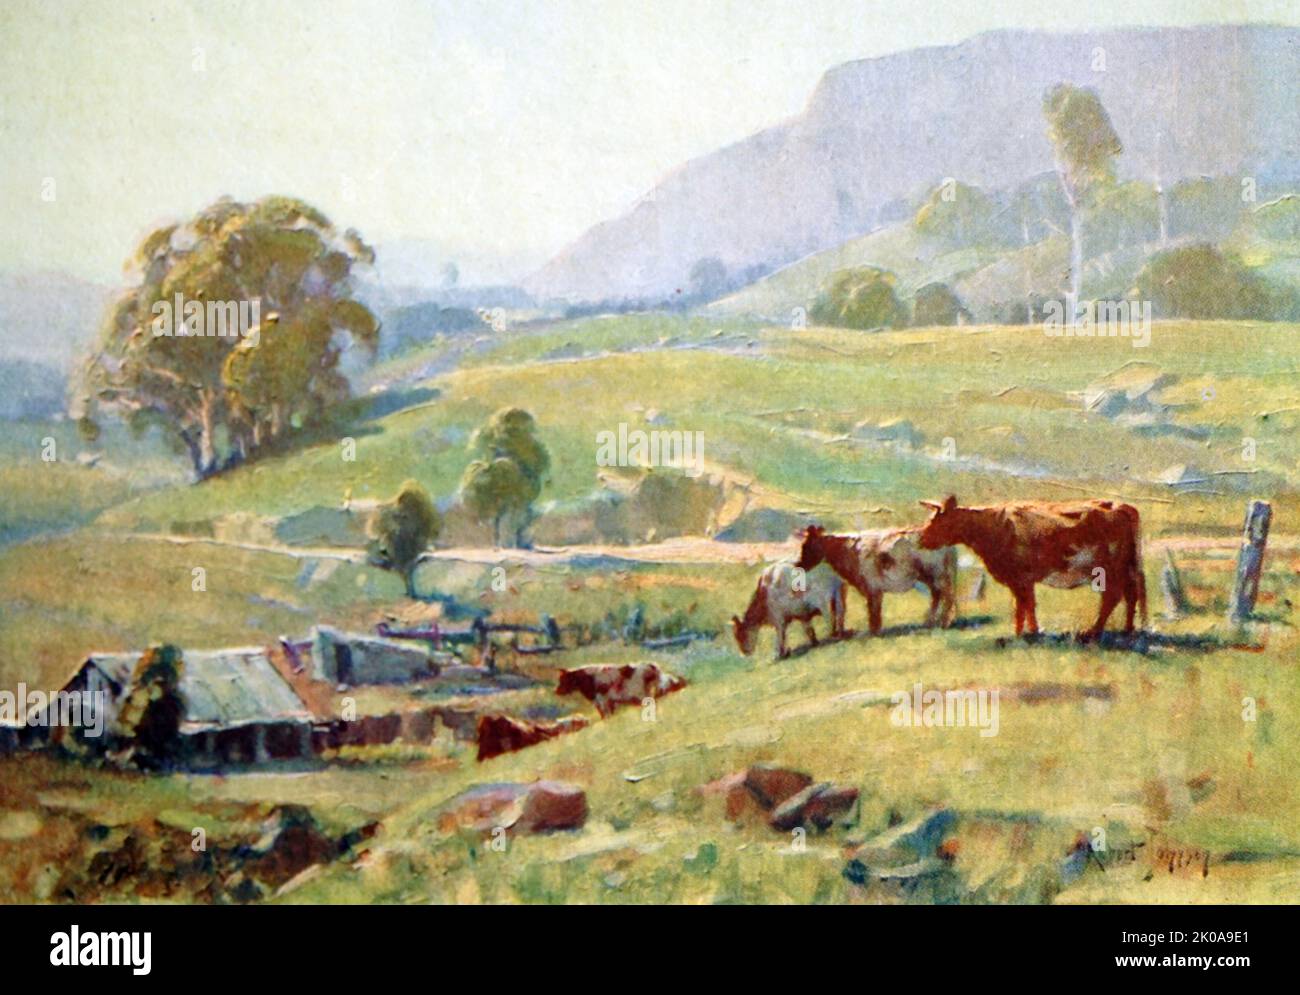 Dans la vallée de la Whattamolla. Peinture à l'huile par Robert Johnson. Robert Johnson (1890-1964) était un peintre impressionniste australien, connu pour ses huiles réalistes et son aquarelle des paysages de l'Australie Banque D'Images